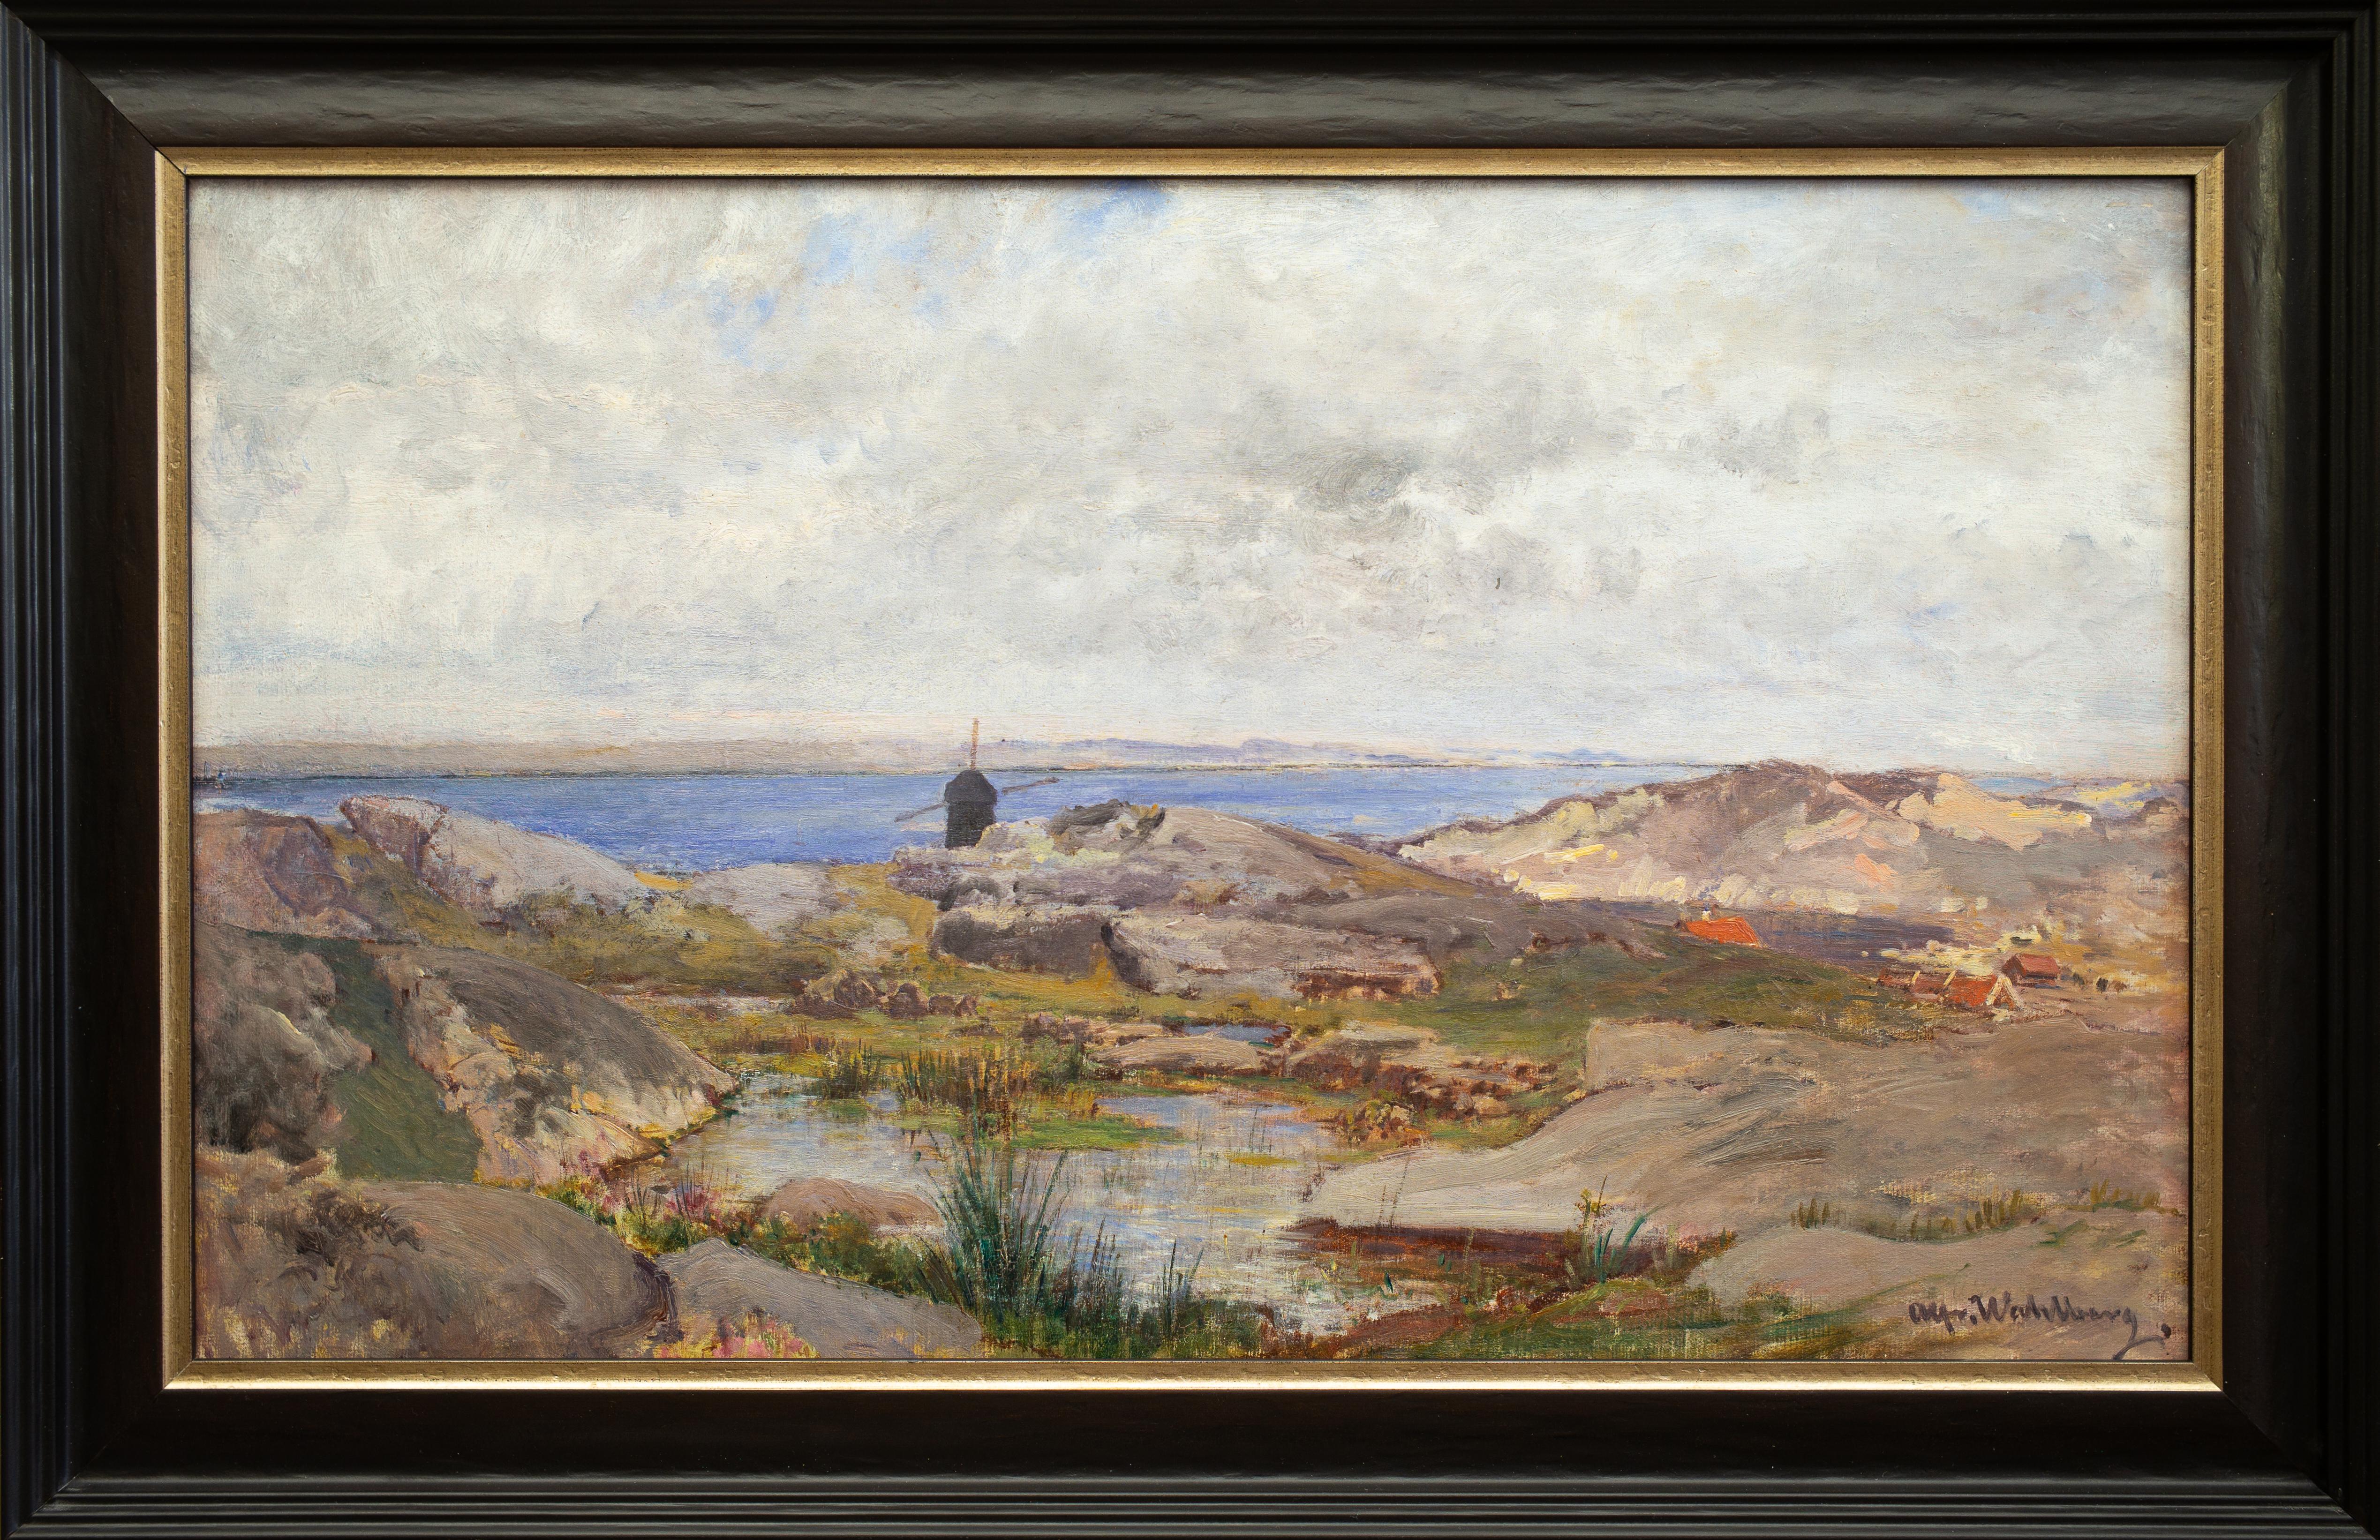 Alfred Wahlberg était un éminent peintre paysagiste suédois dont la carrière s'est déroulée en Allemagne, en France et en Suède. Durant ses premières années, il a résidé à Düsseldorf, où il a été influencé par son mentor, l'artiste norvégien Hans